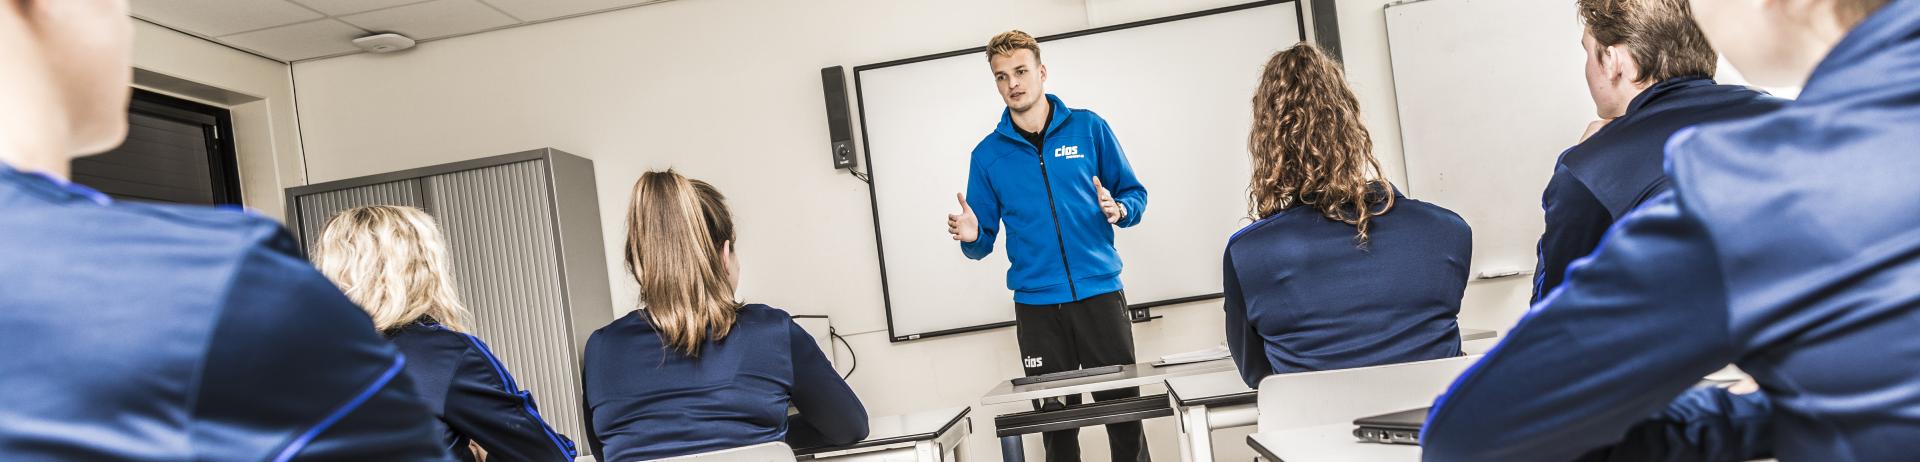 CIOS Zuidwest-Nederland - Procedures en Reglementen - studenten in klas